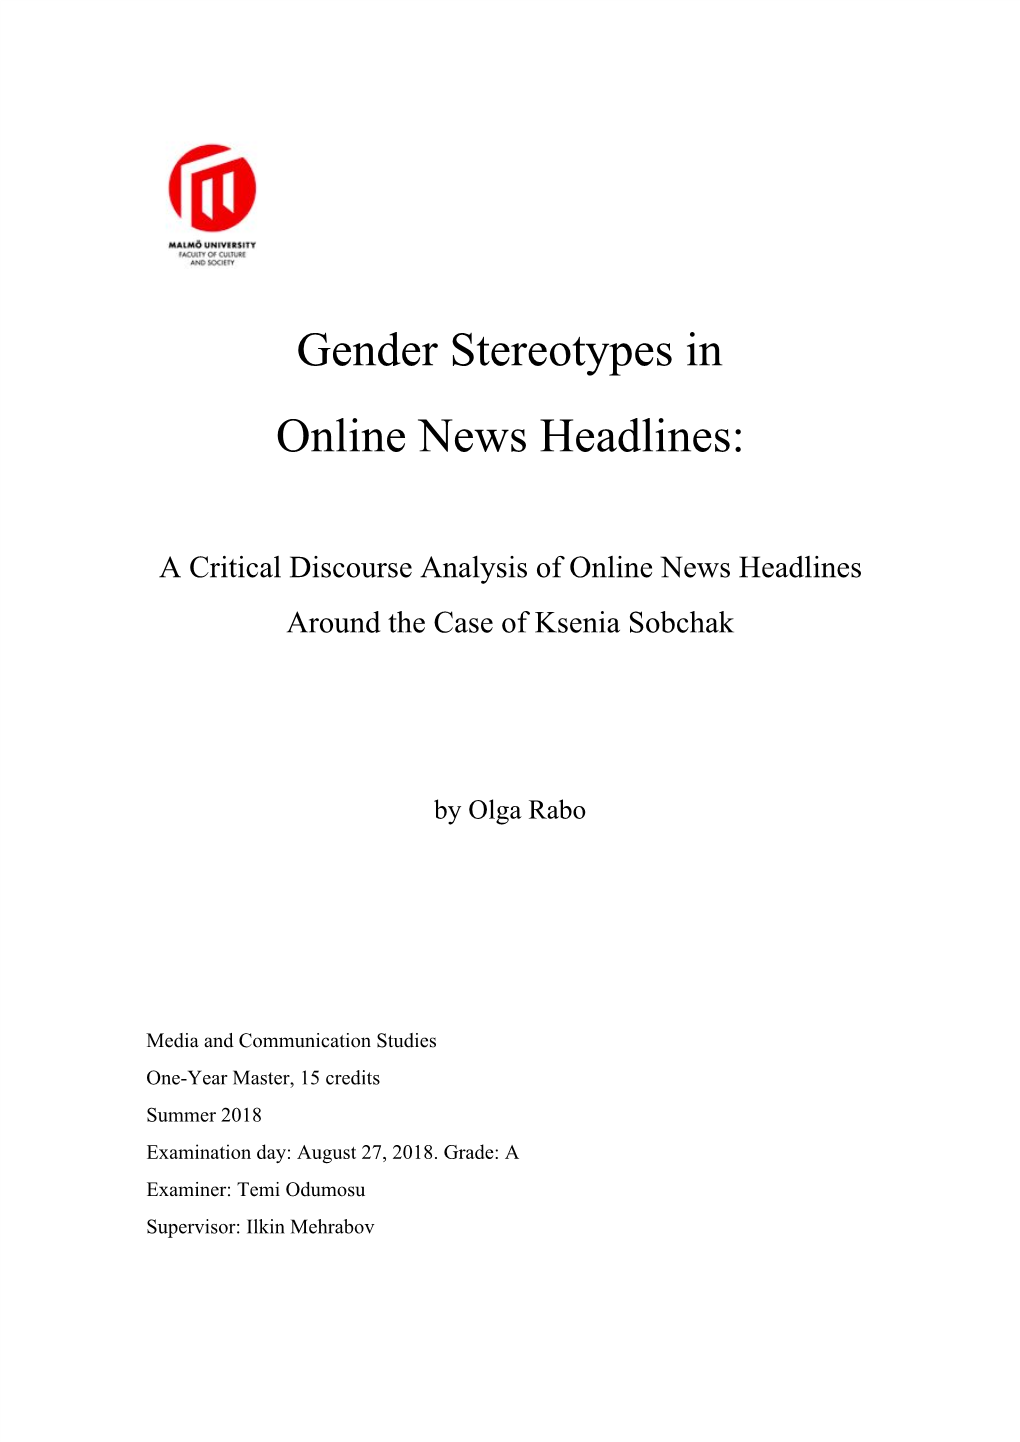 Gender Stereotypes in Online News Headlines